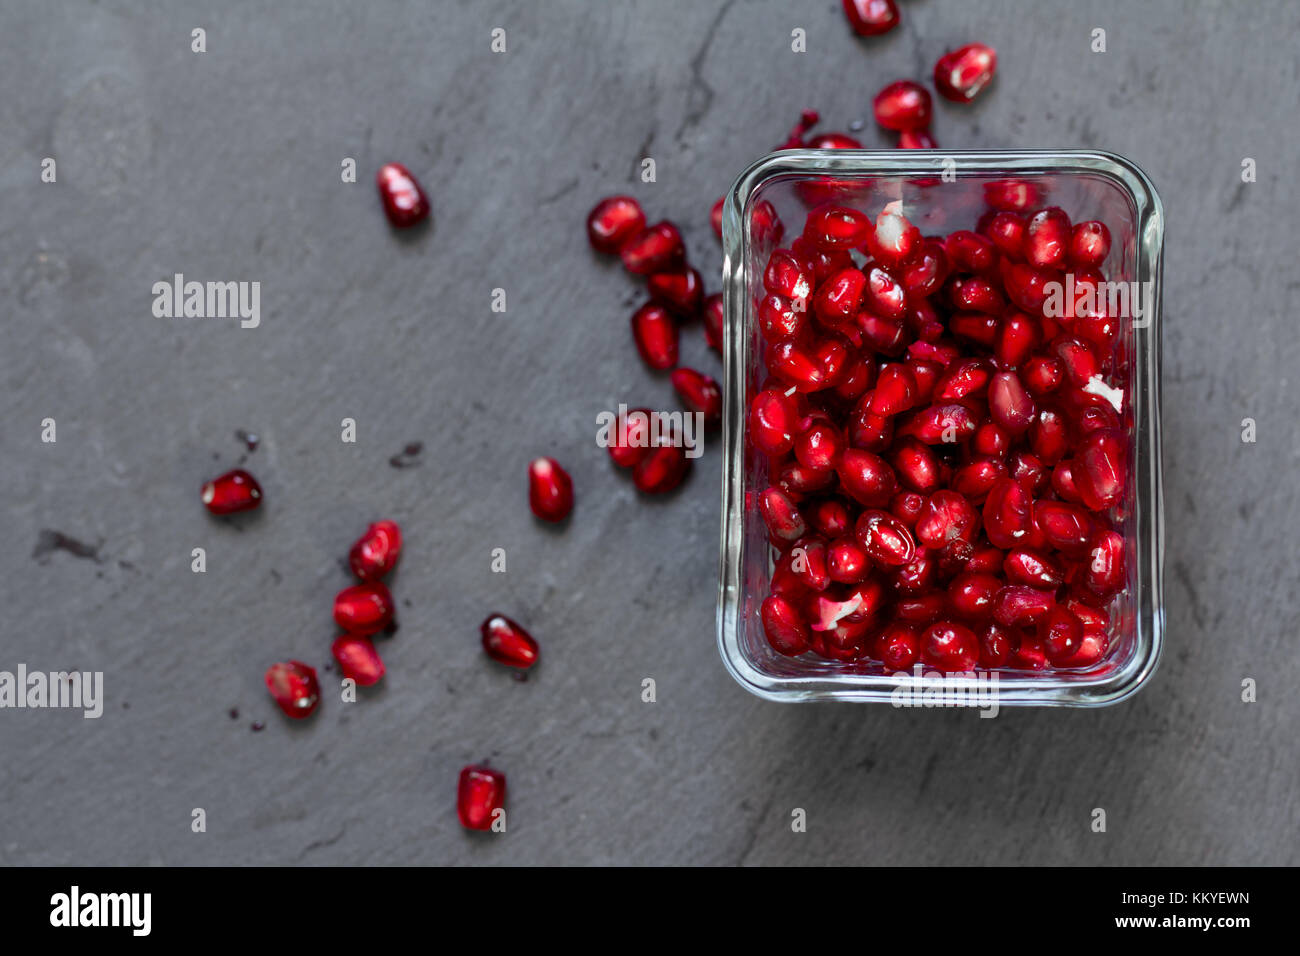 pomegranate fruit seeds Stock Photo